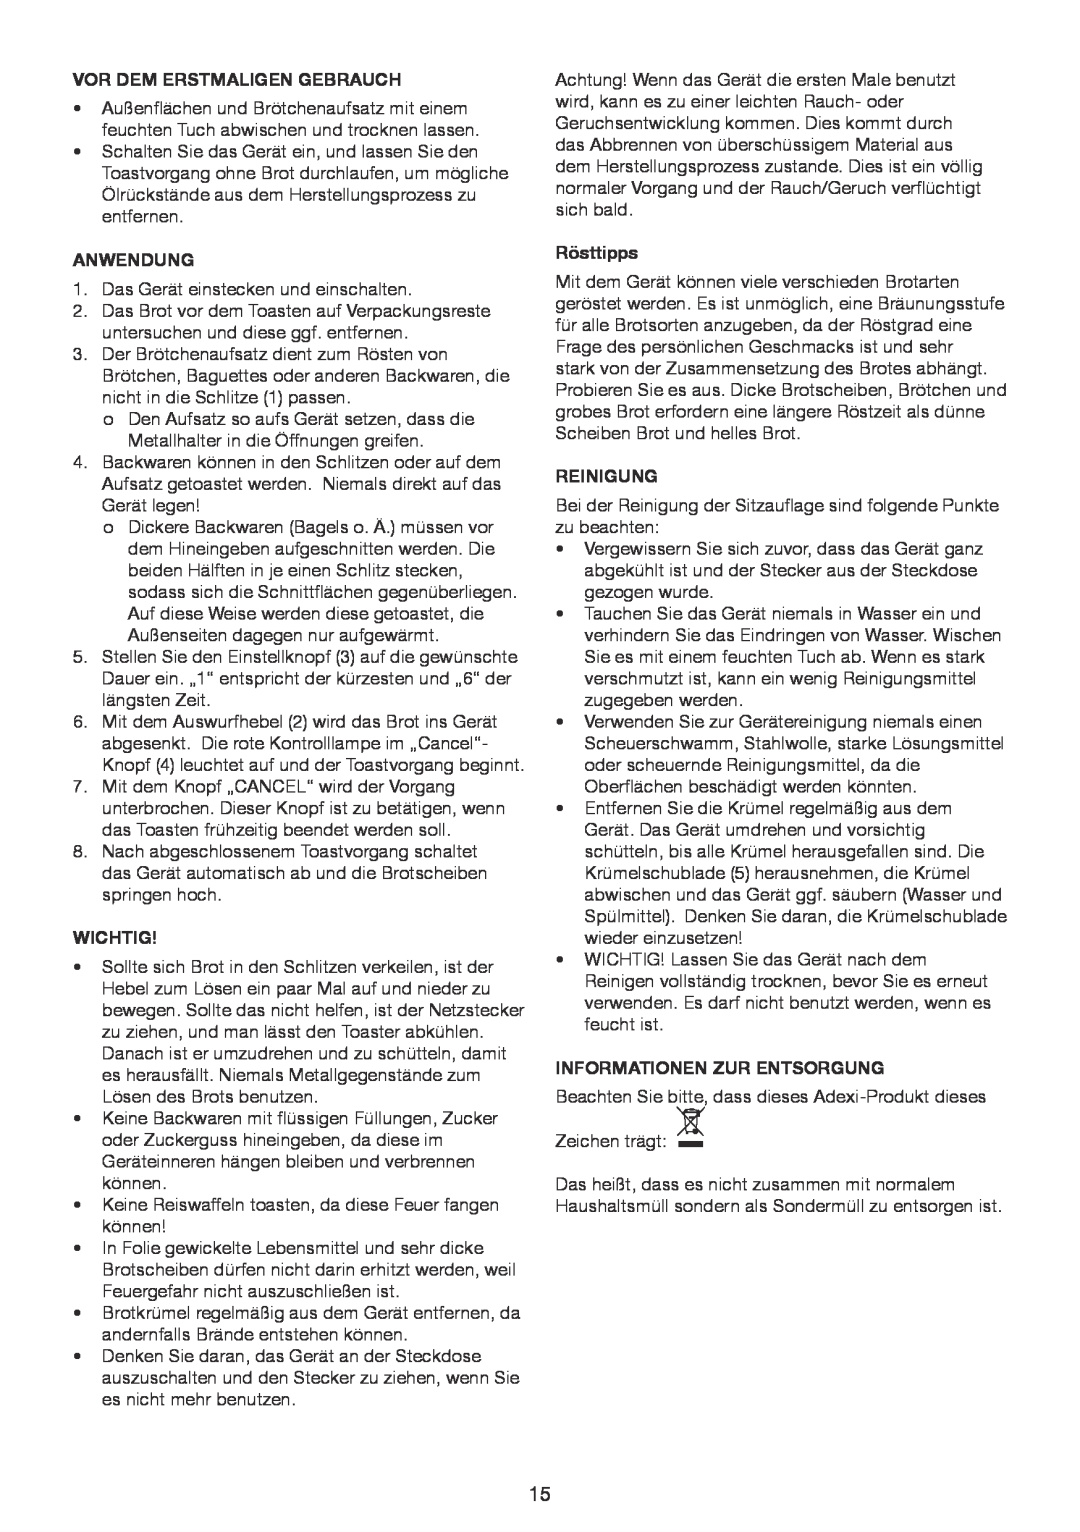 Melissa 643-201 manual Vor Dem Erstmaligen Gebrauch, Anwendung, Wichtig, Rösttipps, Reinigung, Informationen Zur Entsorgung 